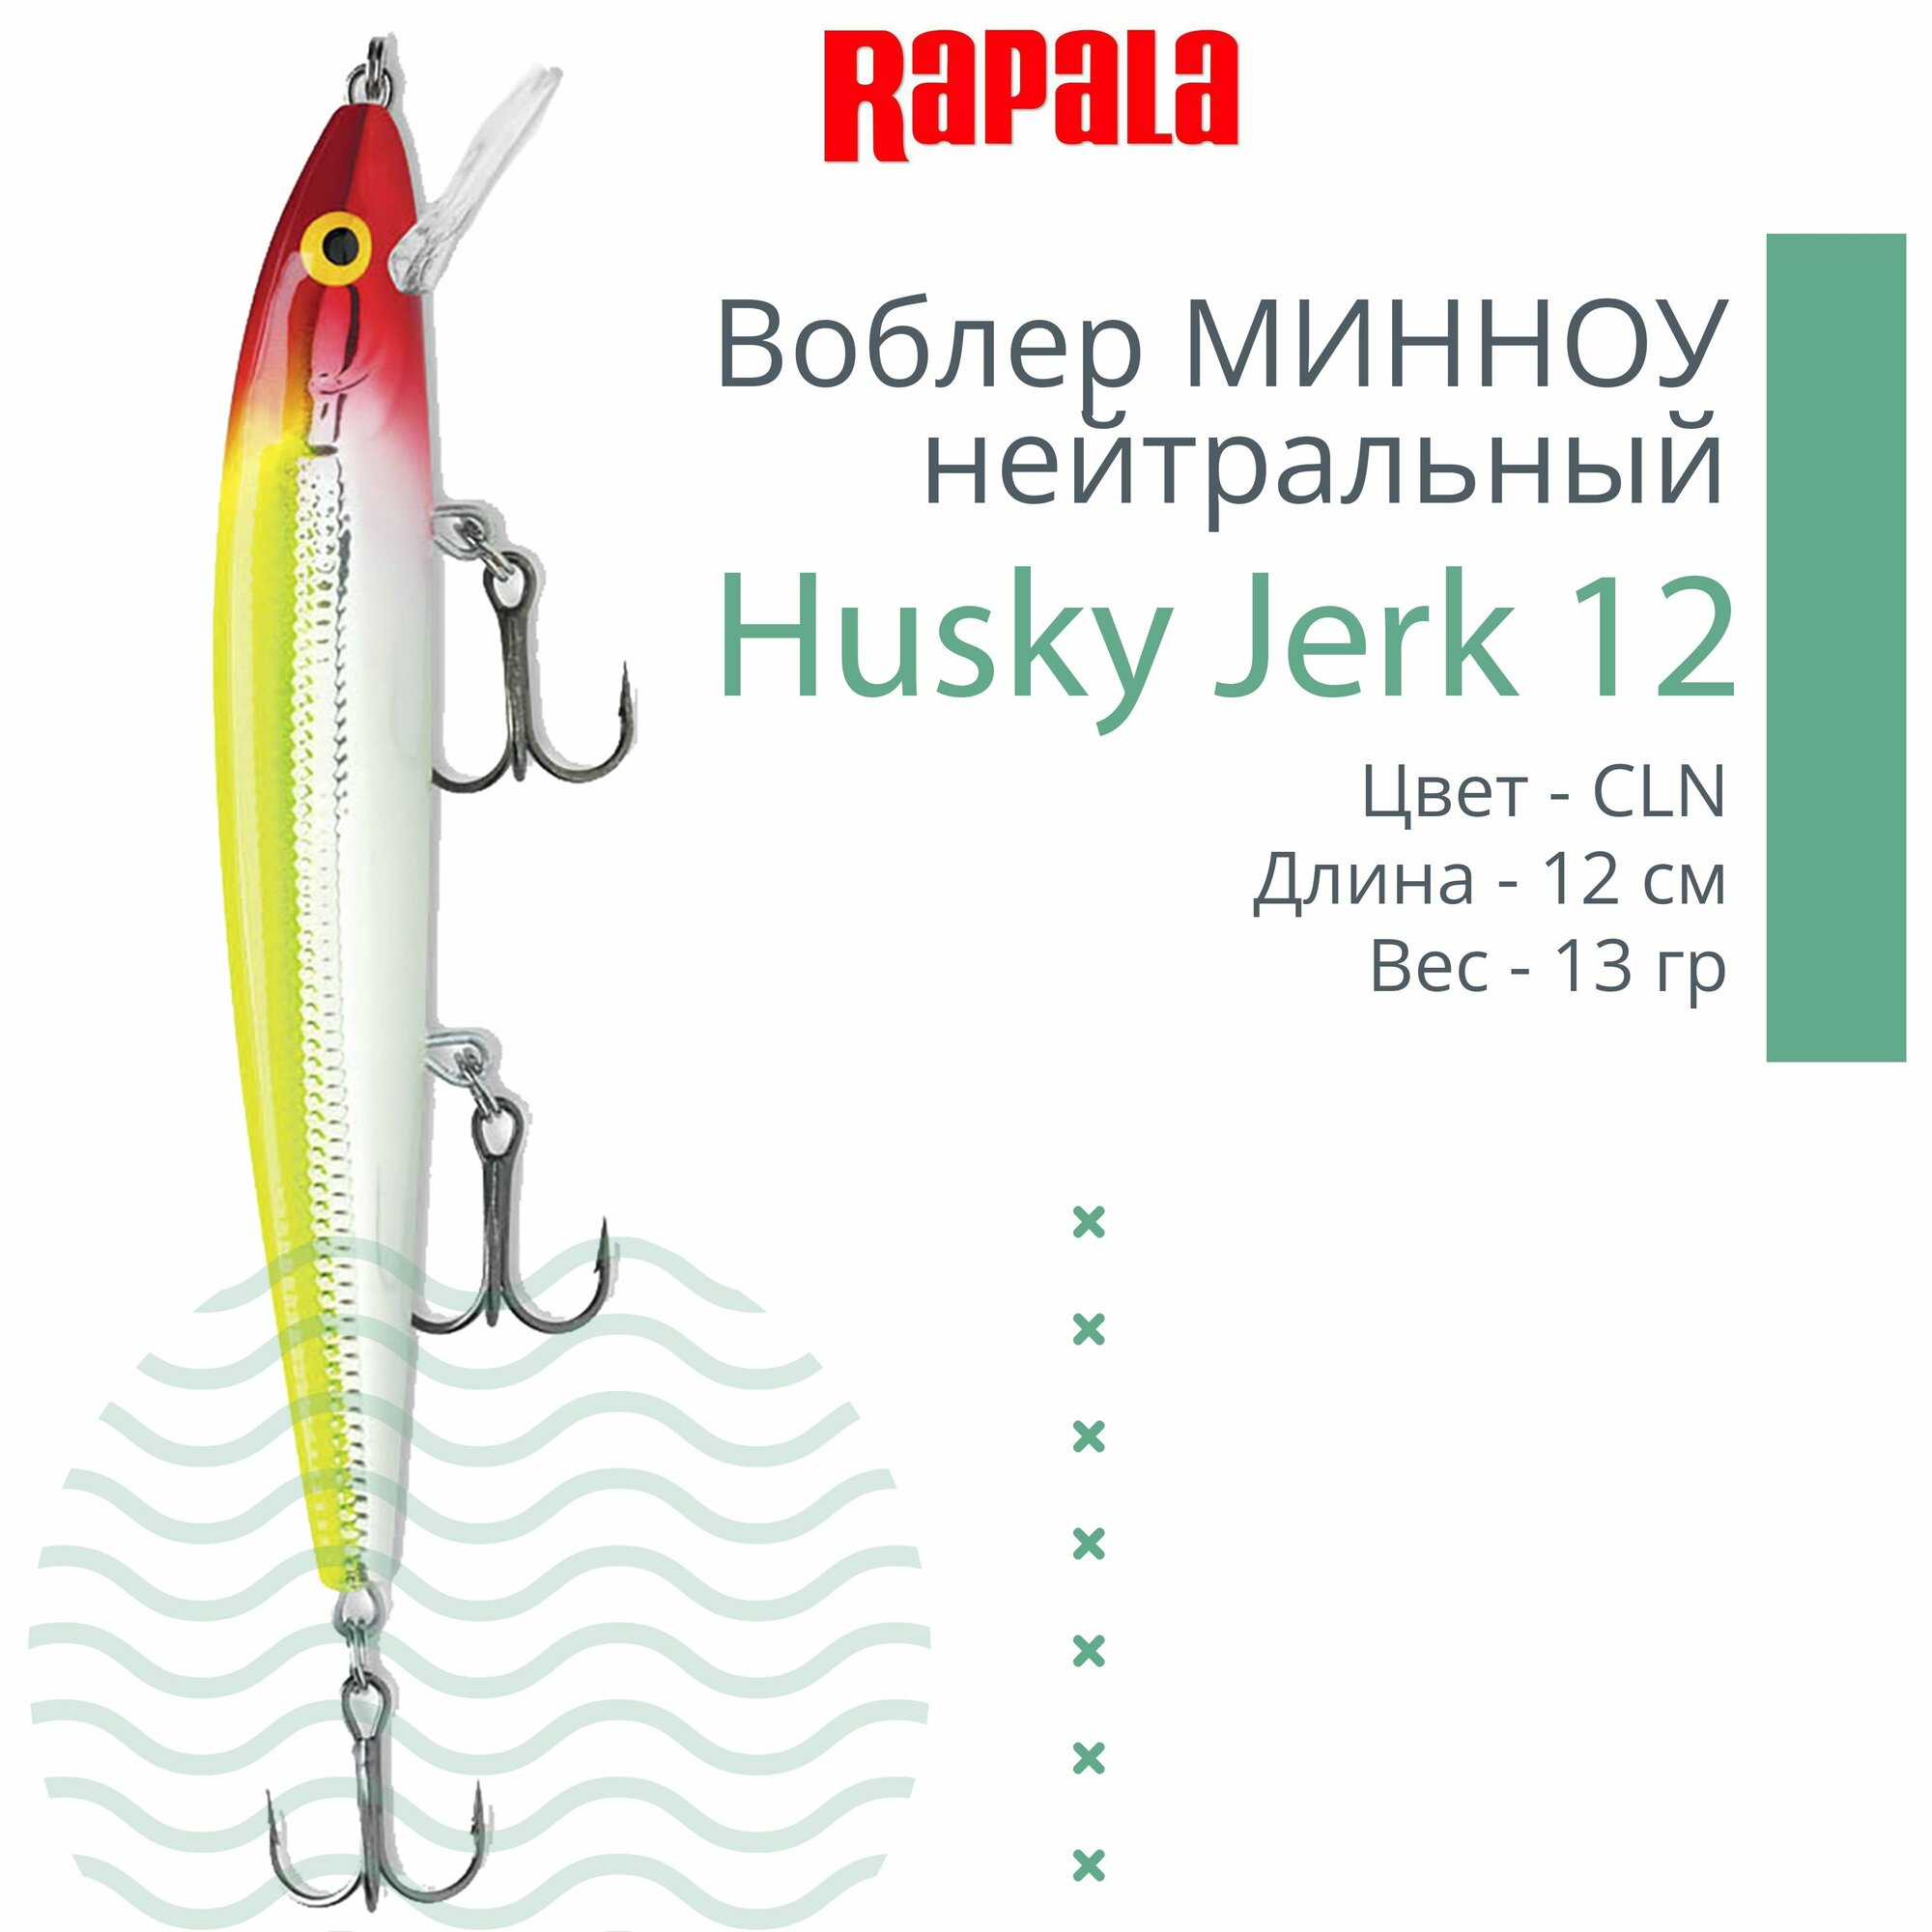 Воблер для рыбалки Rapala Husky Jerk 12, 12см, 13гр, цвет CLN, нейтральный